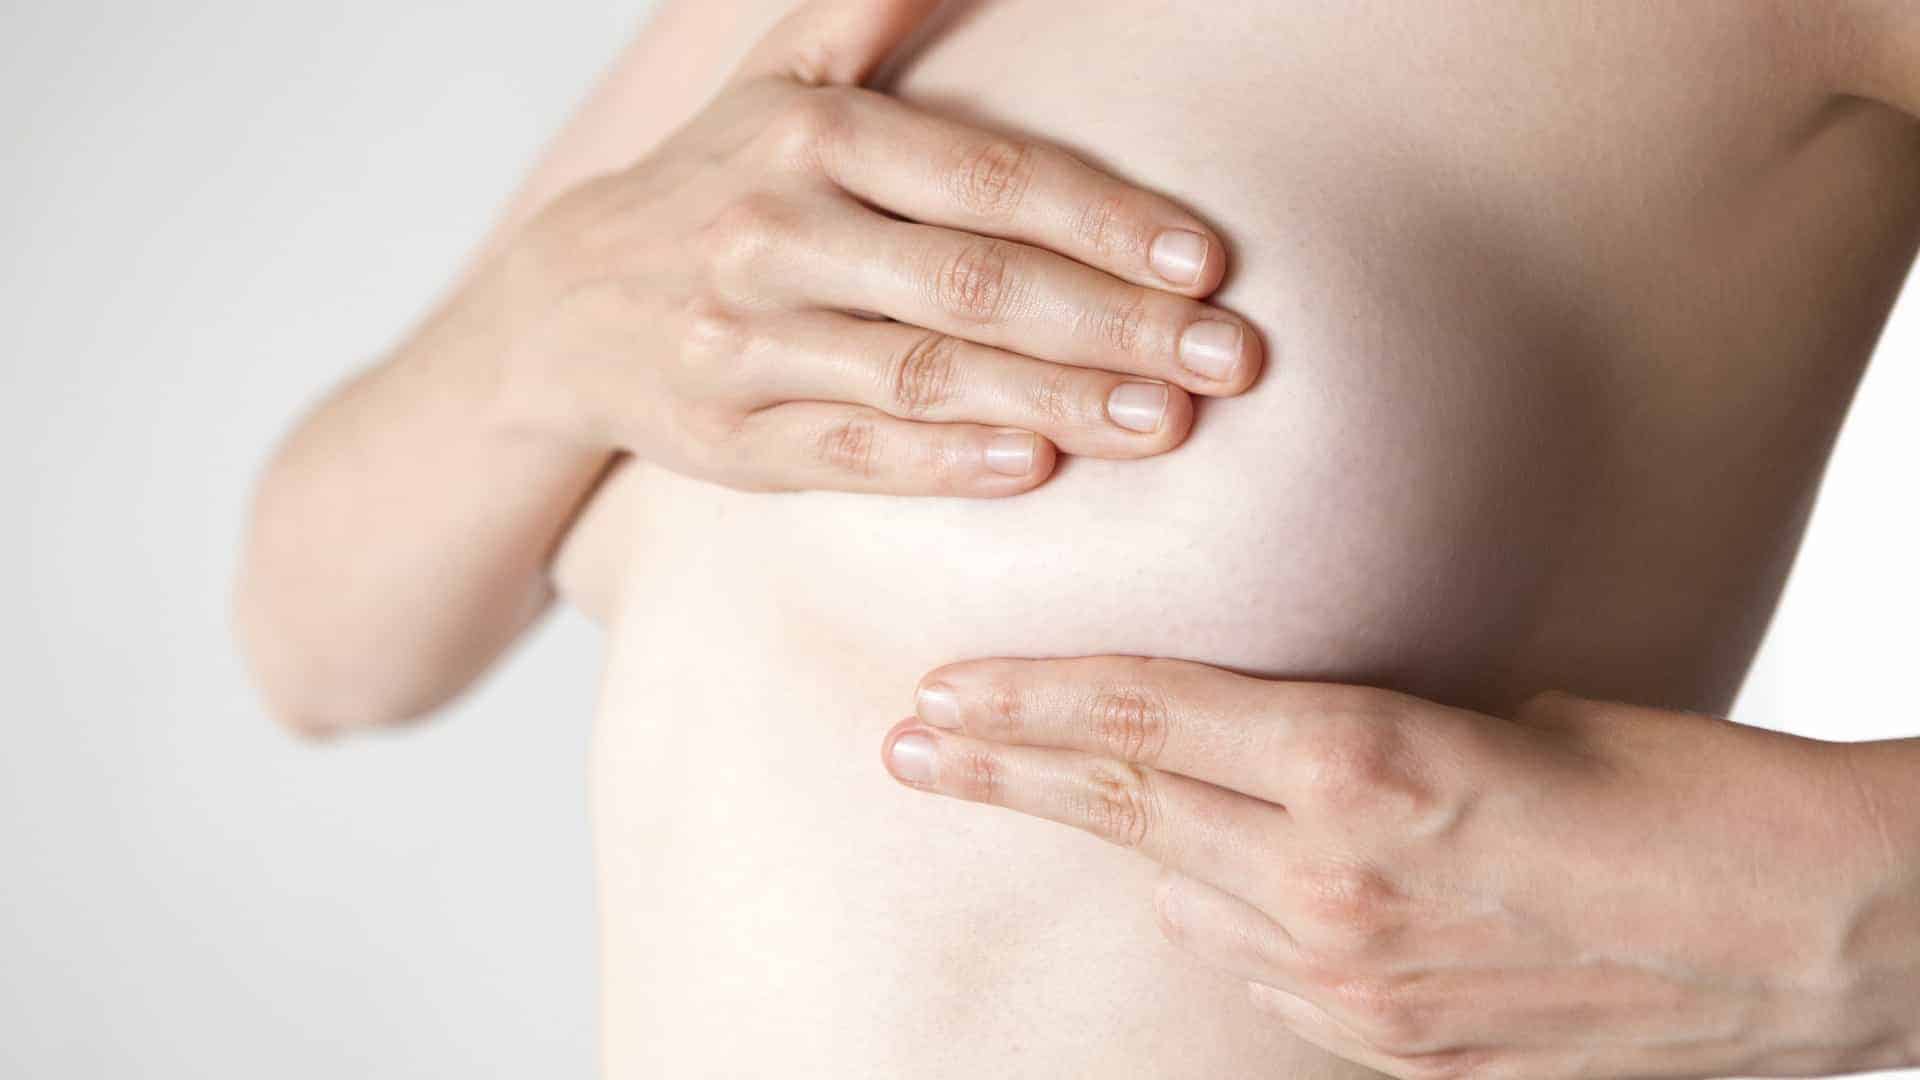 Dor na mama: principais causas e tratamentos